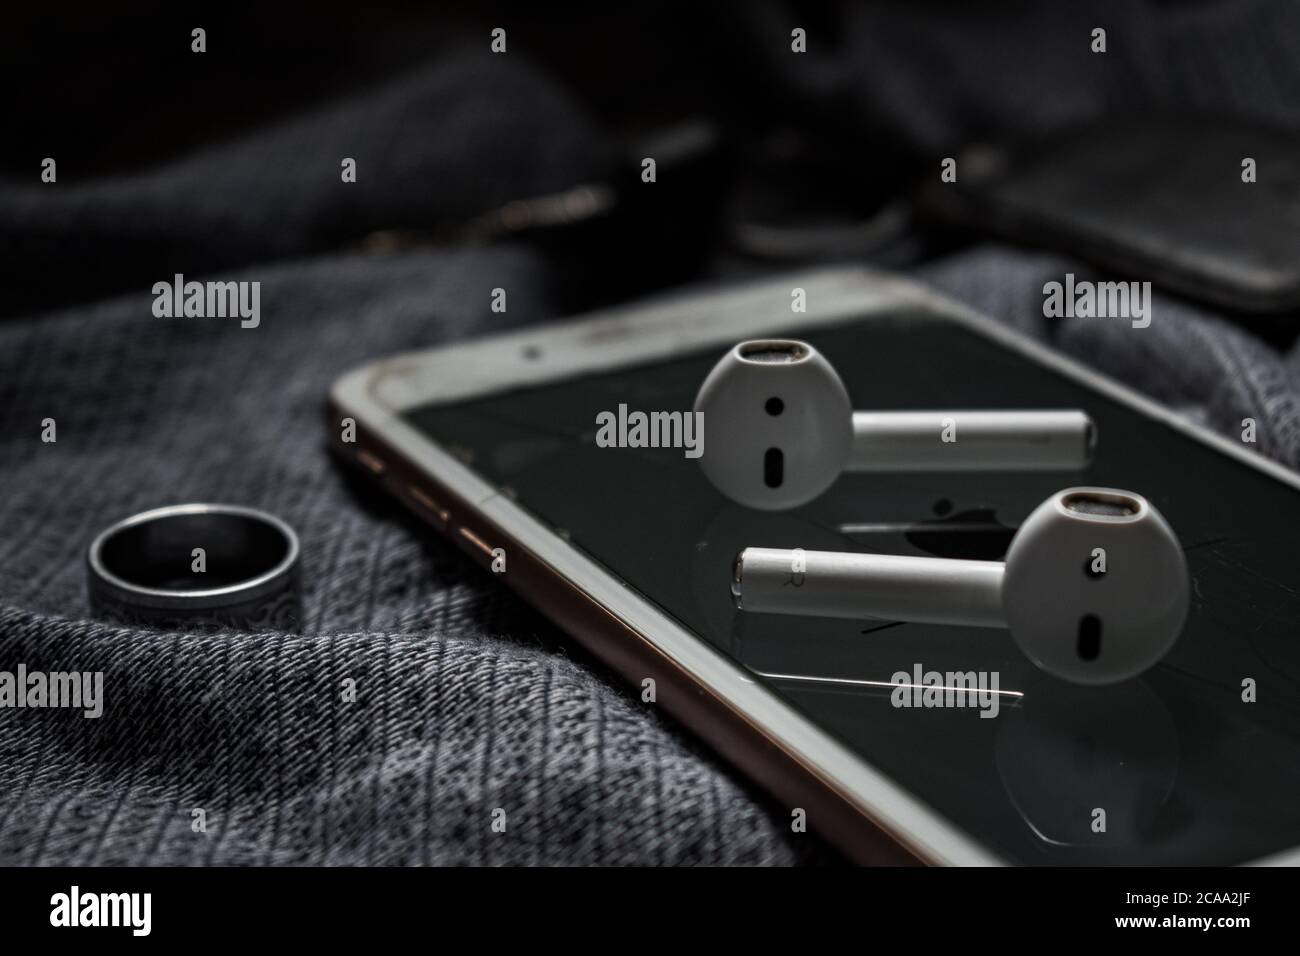 auricolari bluetooth posizionati su un telefono cellulare Foto Stock